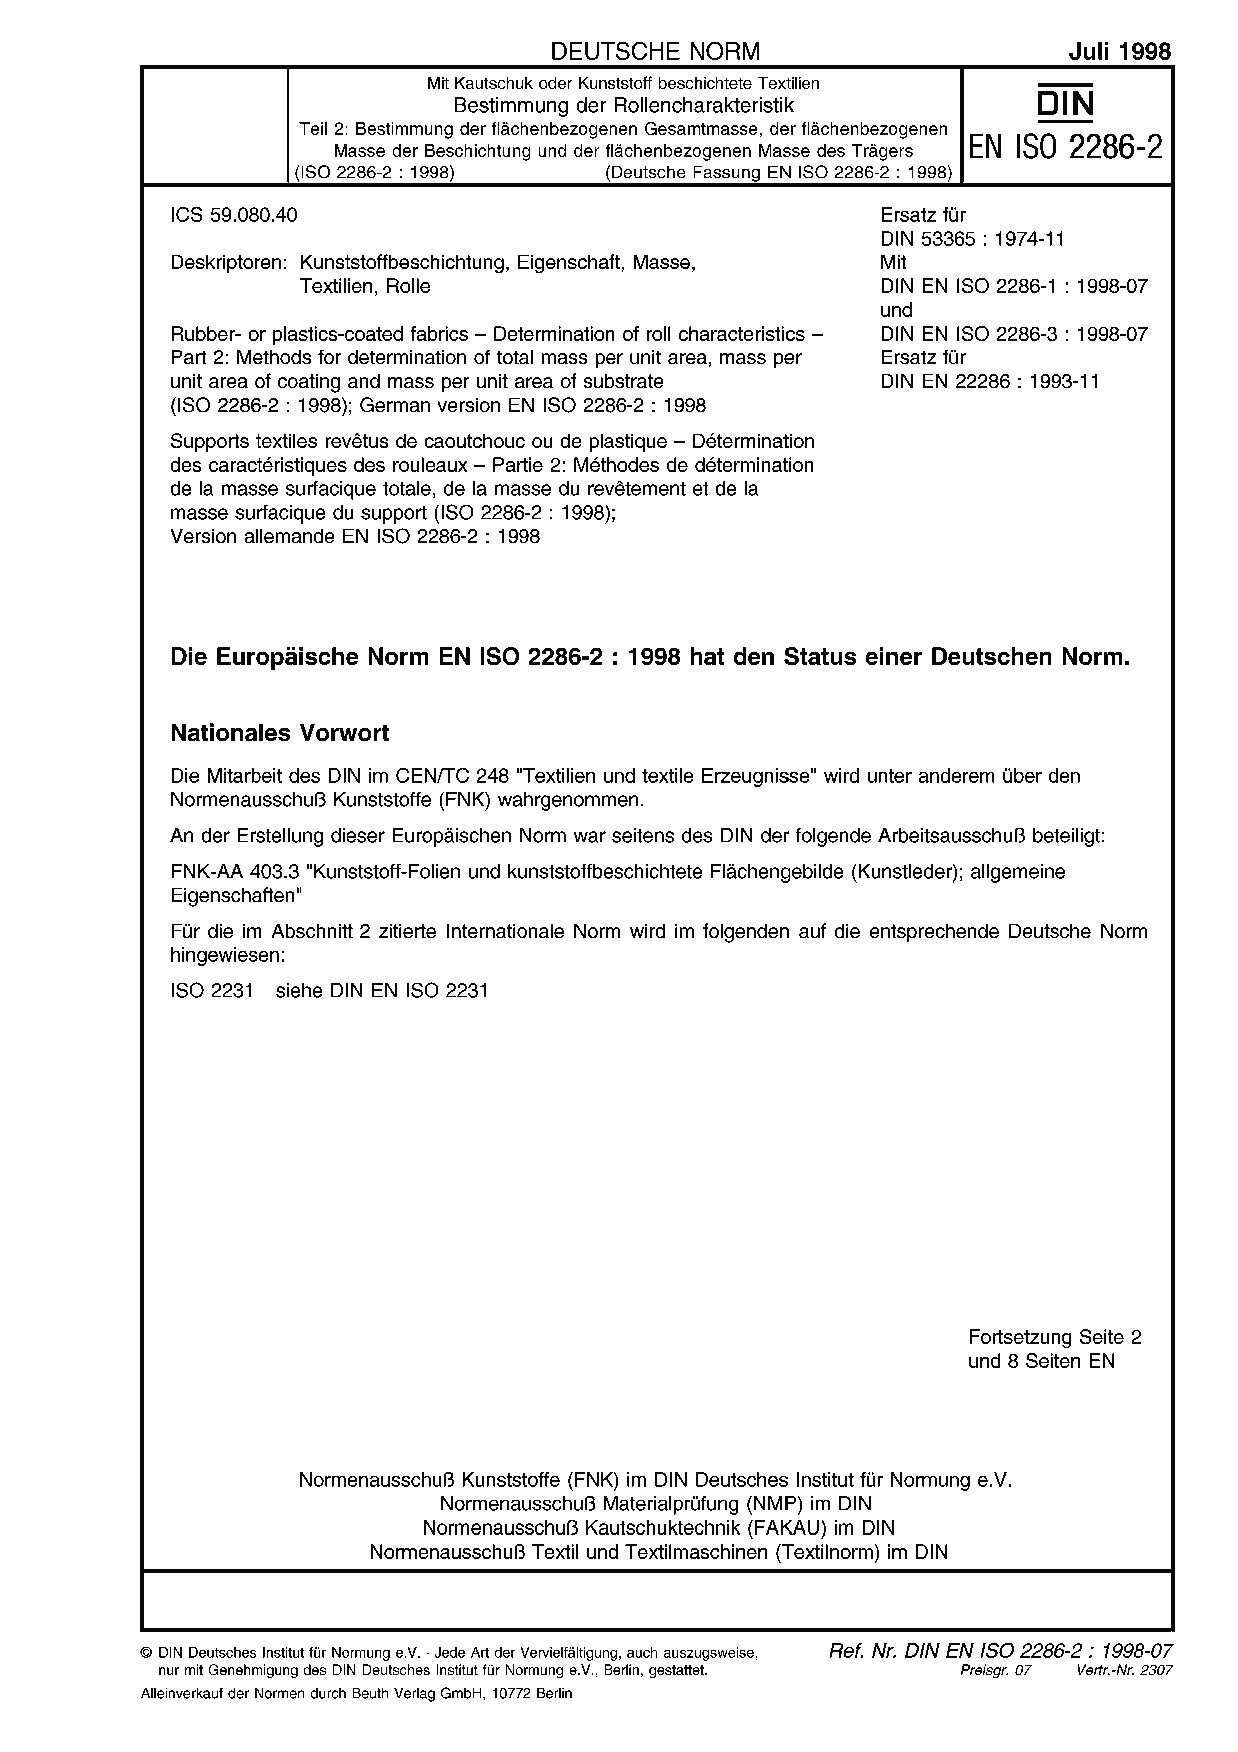 DIN EN ISO 2286-2:1998封面图